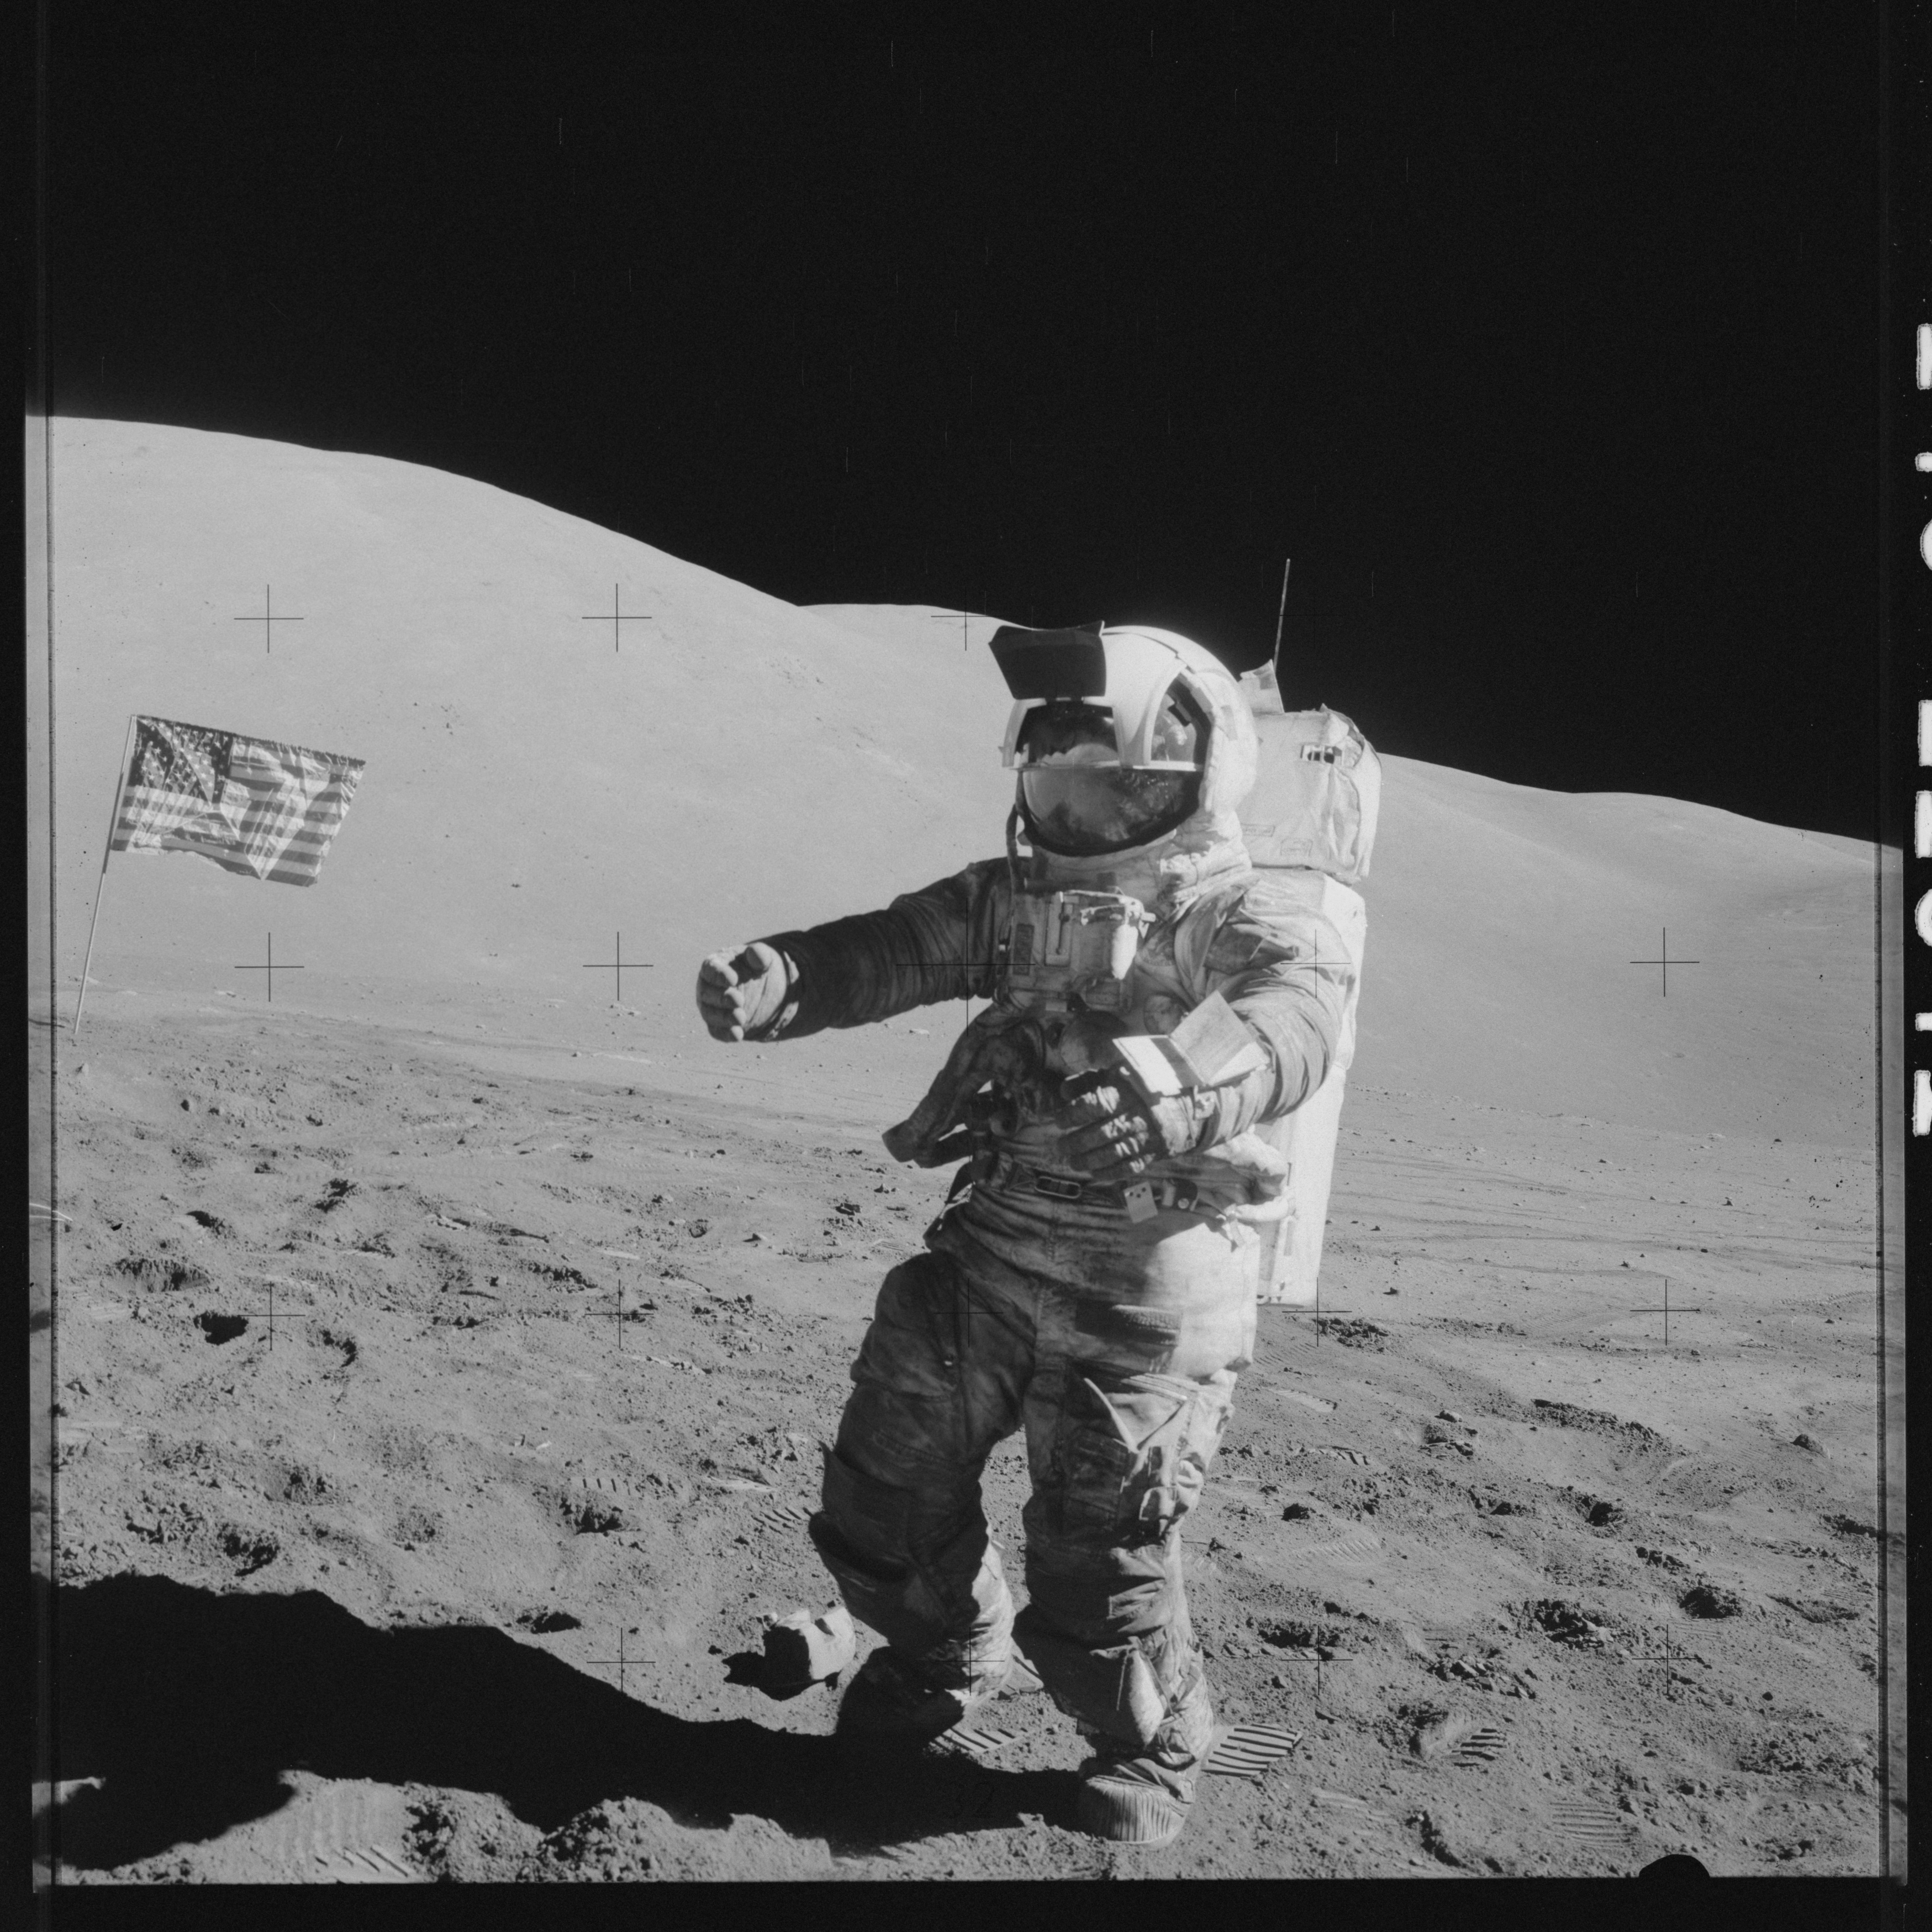 Космонавты высадились на луне. Аполлон 17. Шмитт астронавт фото НАСА Аполлон 17. Аполлон 17 на Луне. 1969 Первый человек на Луне.